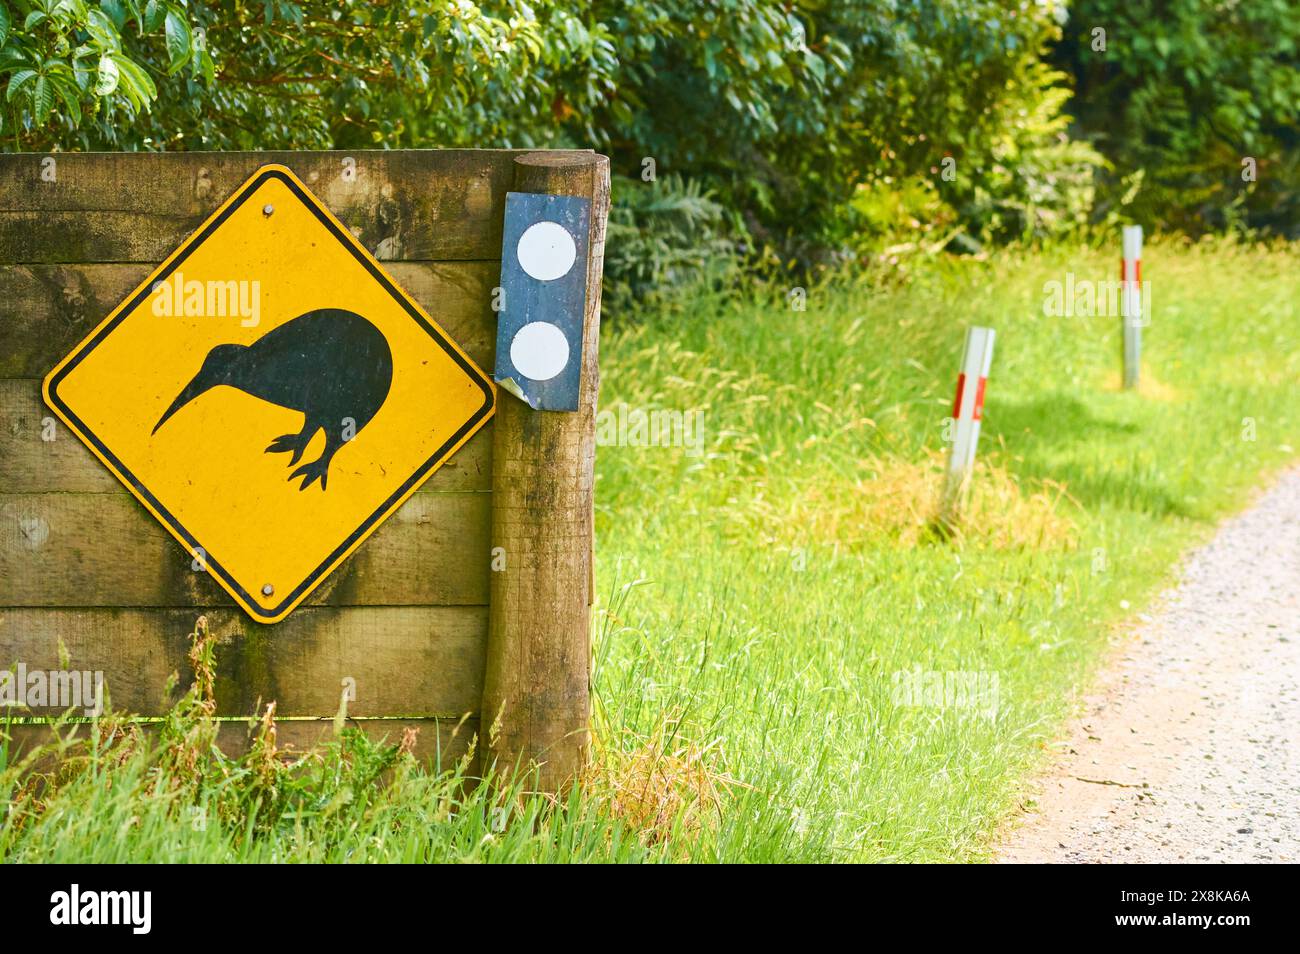 Un cartello indicante agli utenti della strada di cercare kiwi selvatici su Stewart Island/Rakiura, nuova Zelanda. Foto Stock